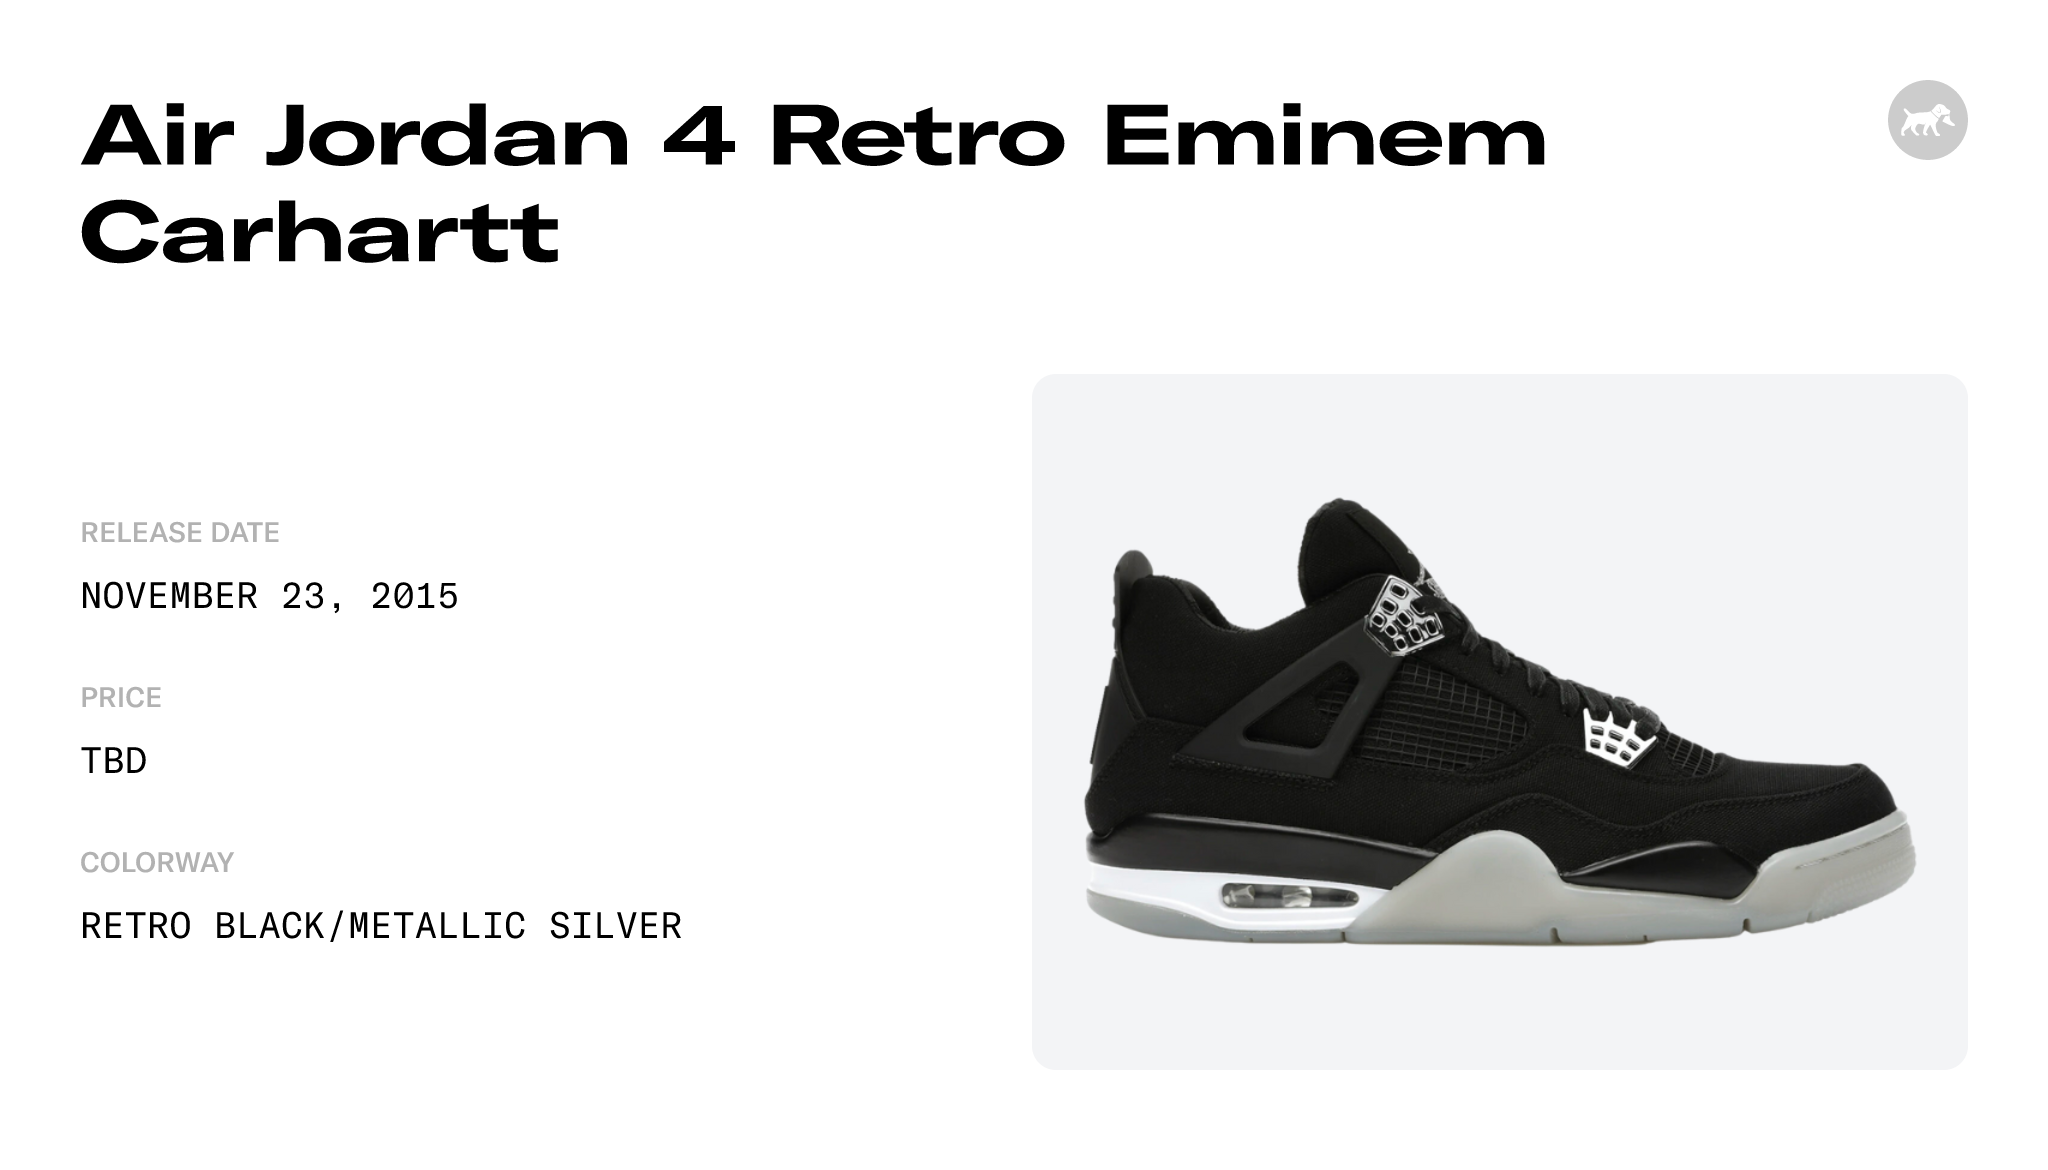 Jordan 4 Retro Eminem Carhartt